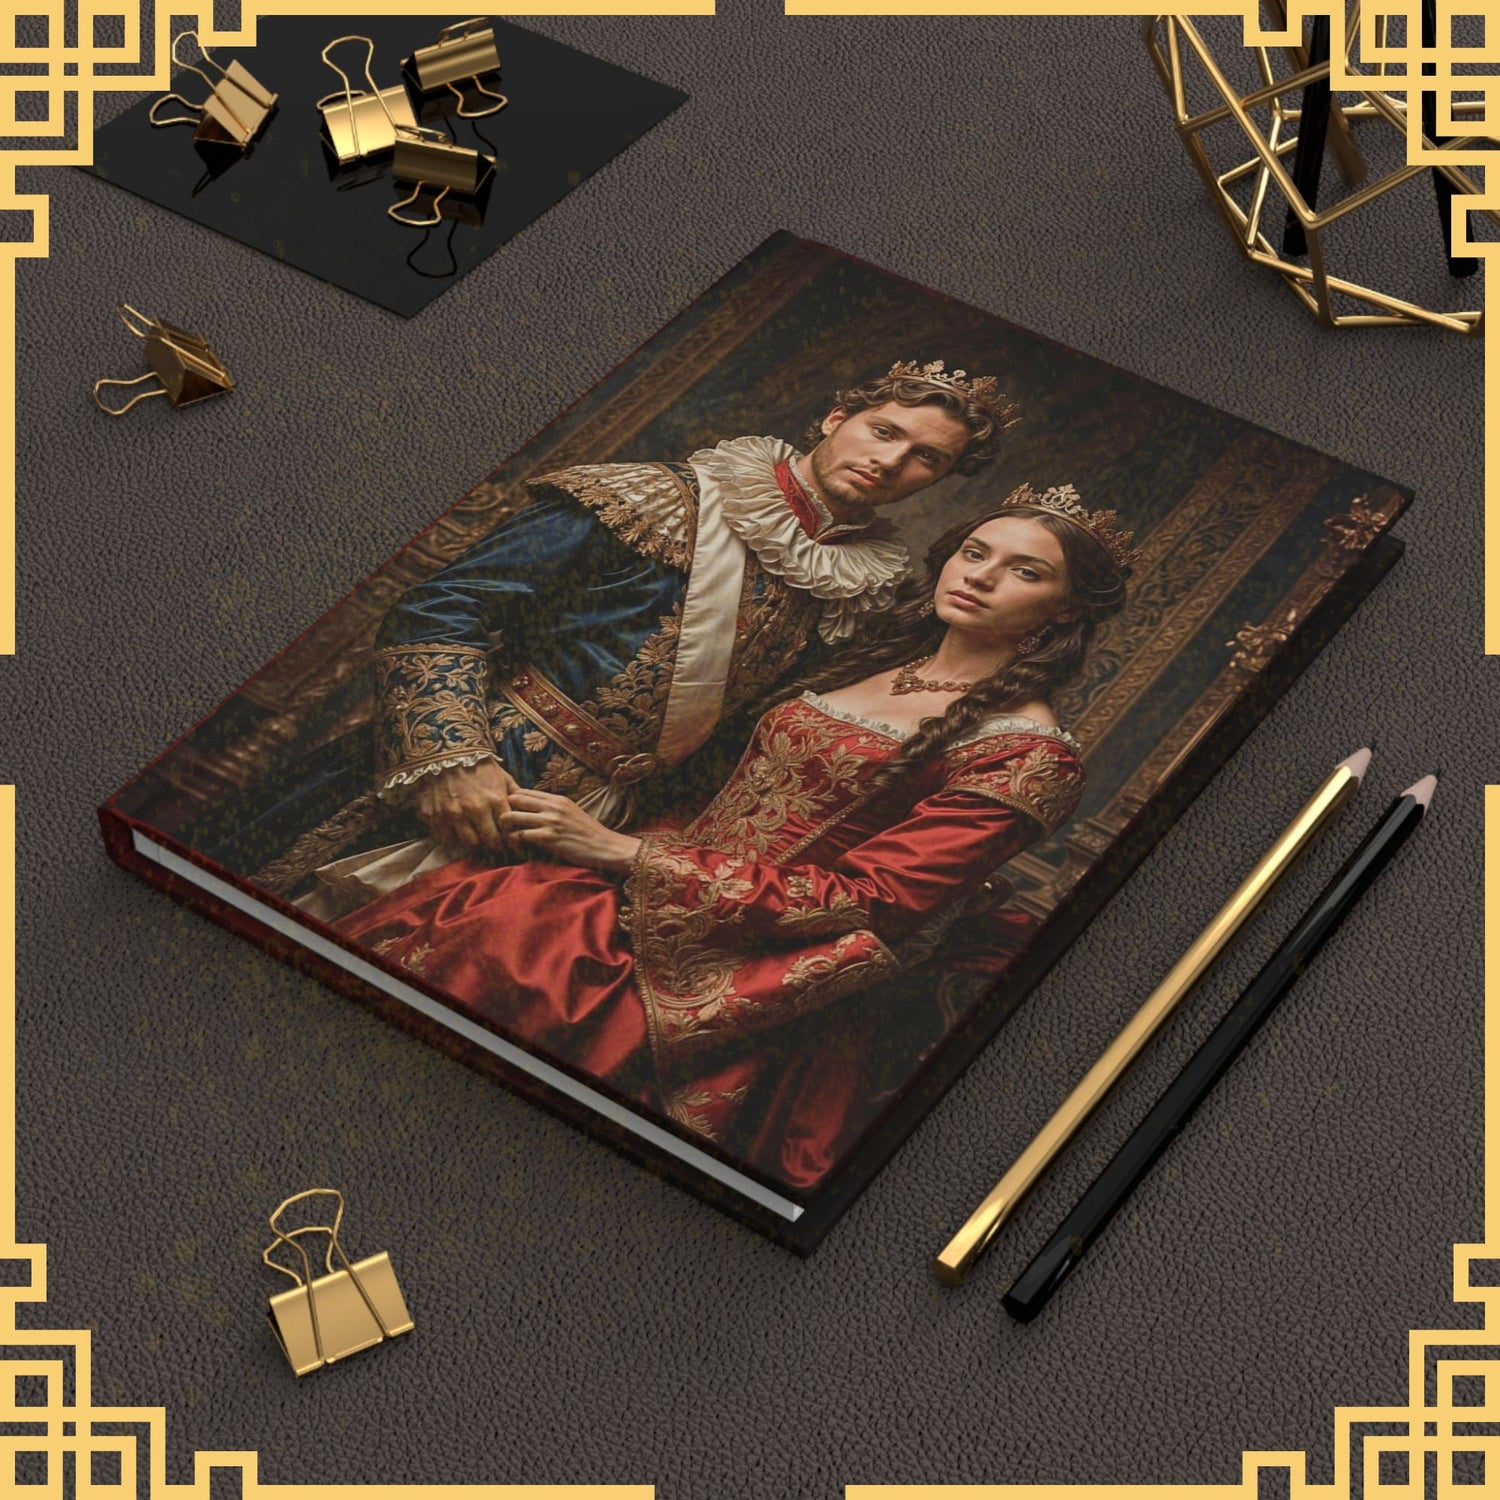 Custom Journal, Custom Royal Couples Journal from Photo, Renaissance Journal, Historical Journal, (2)